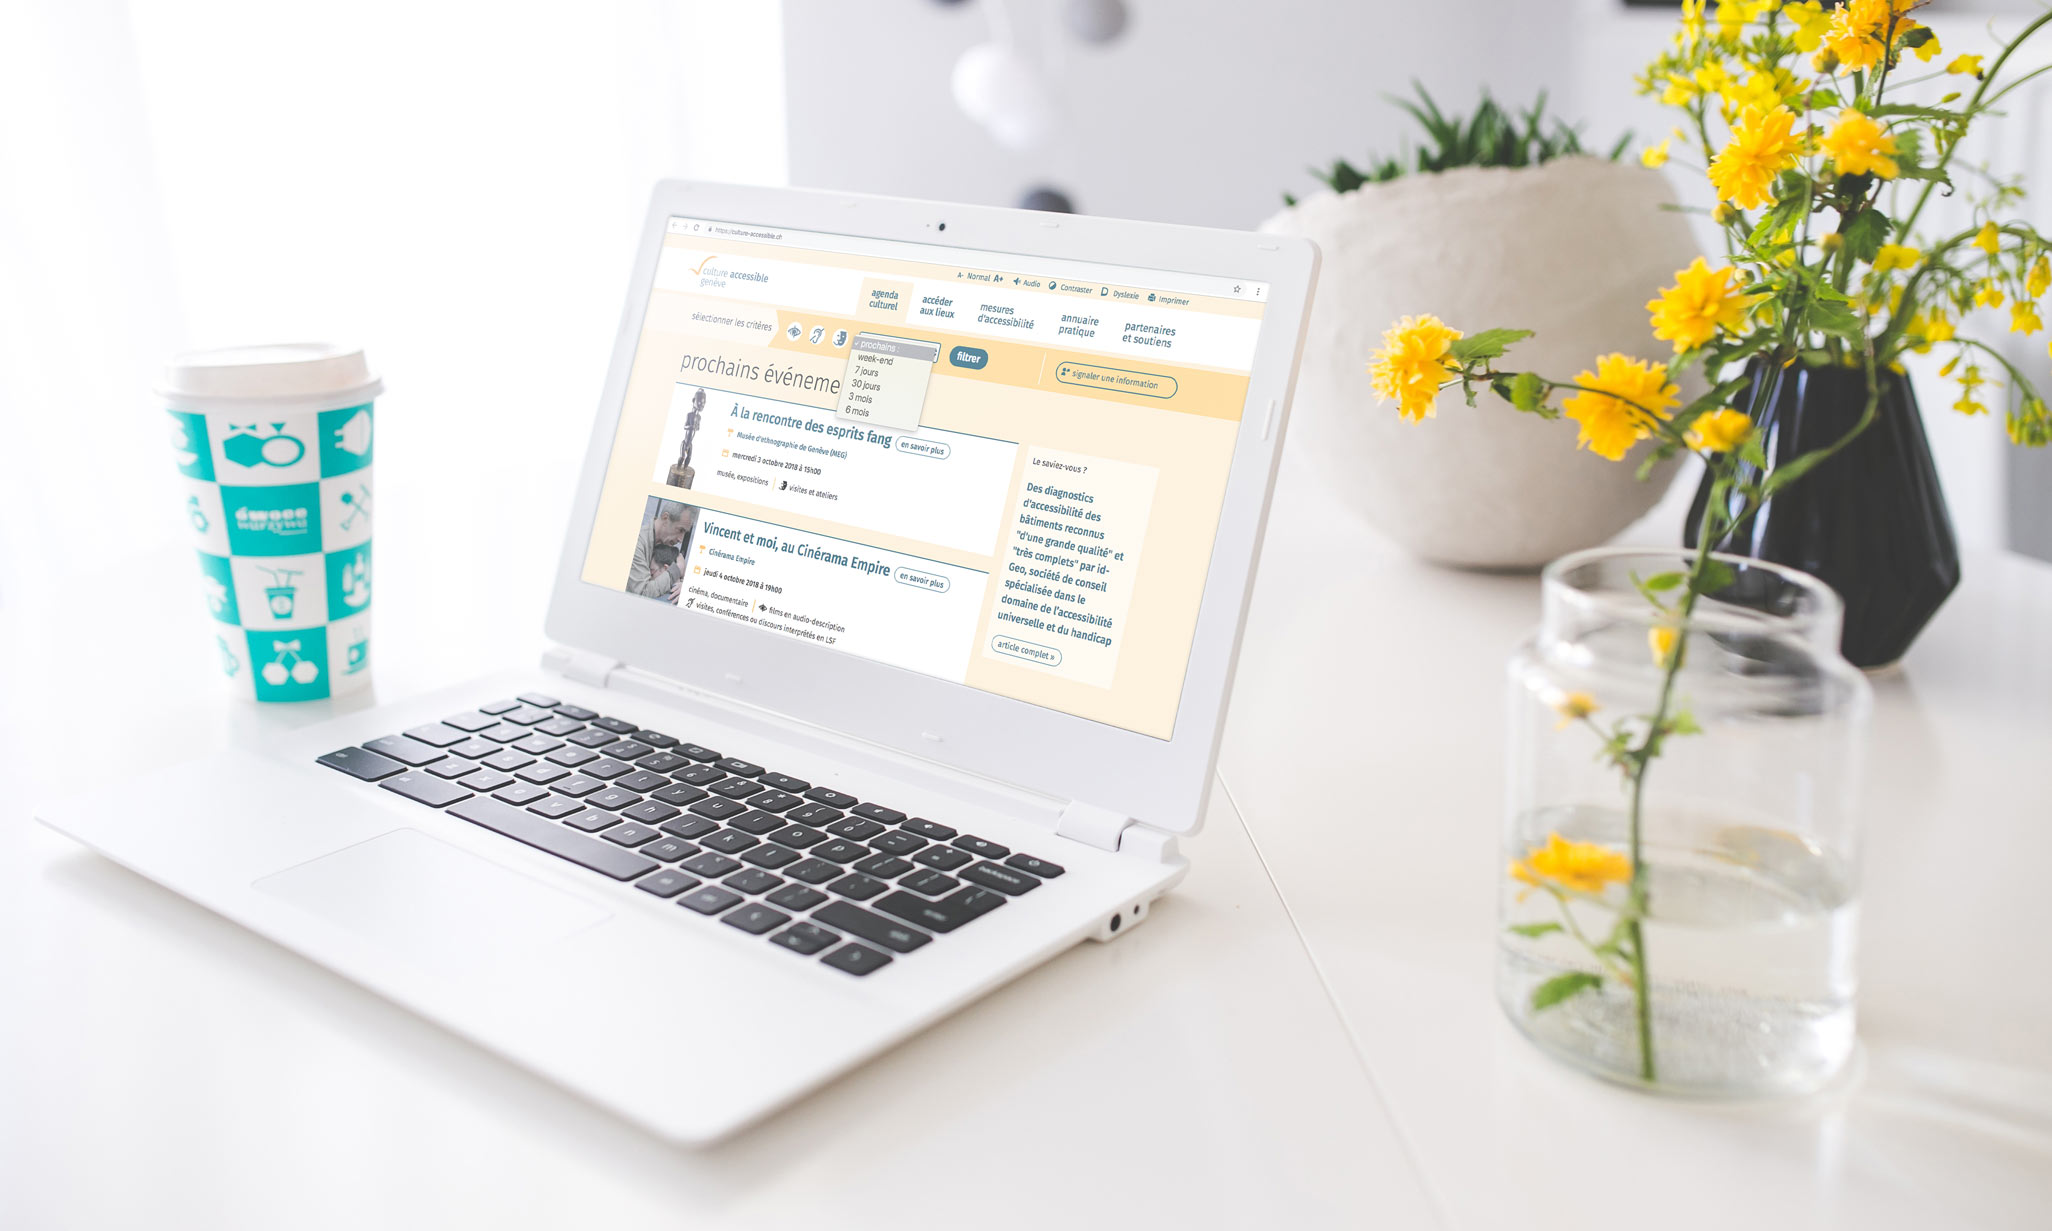 Ordinateur portable avec un pot de fleurs jaunes, présentant la page d'accueil du site culture-accessible.ch